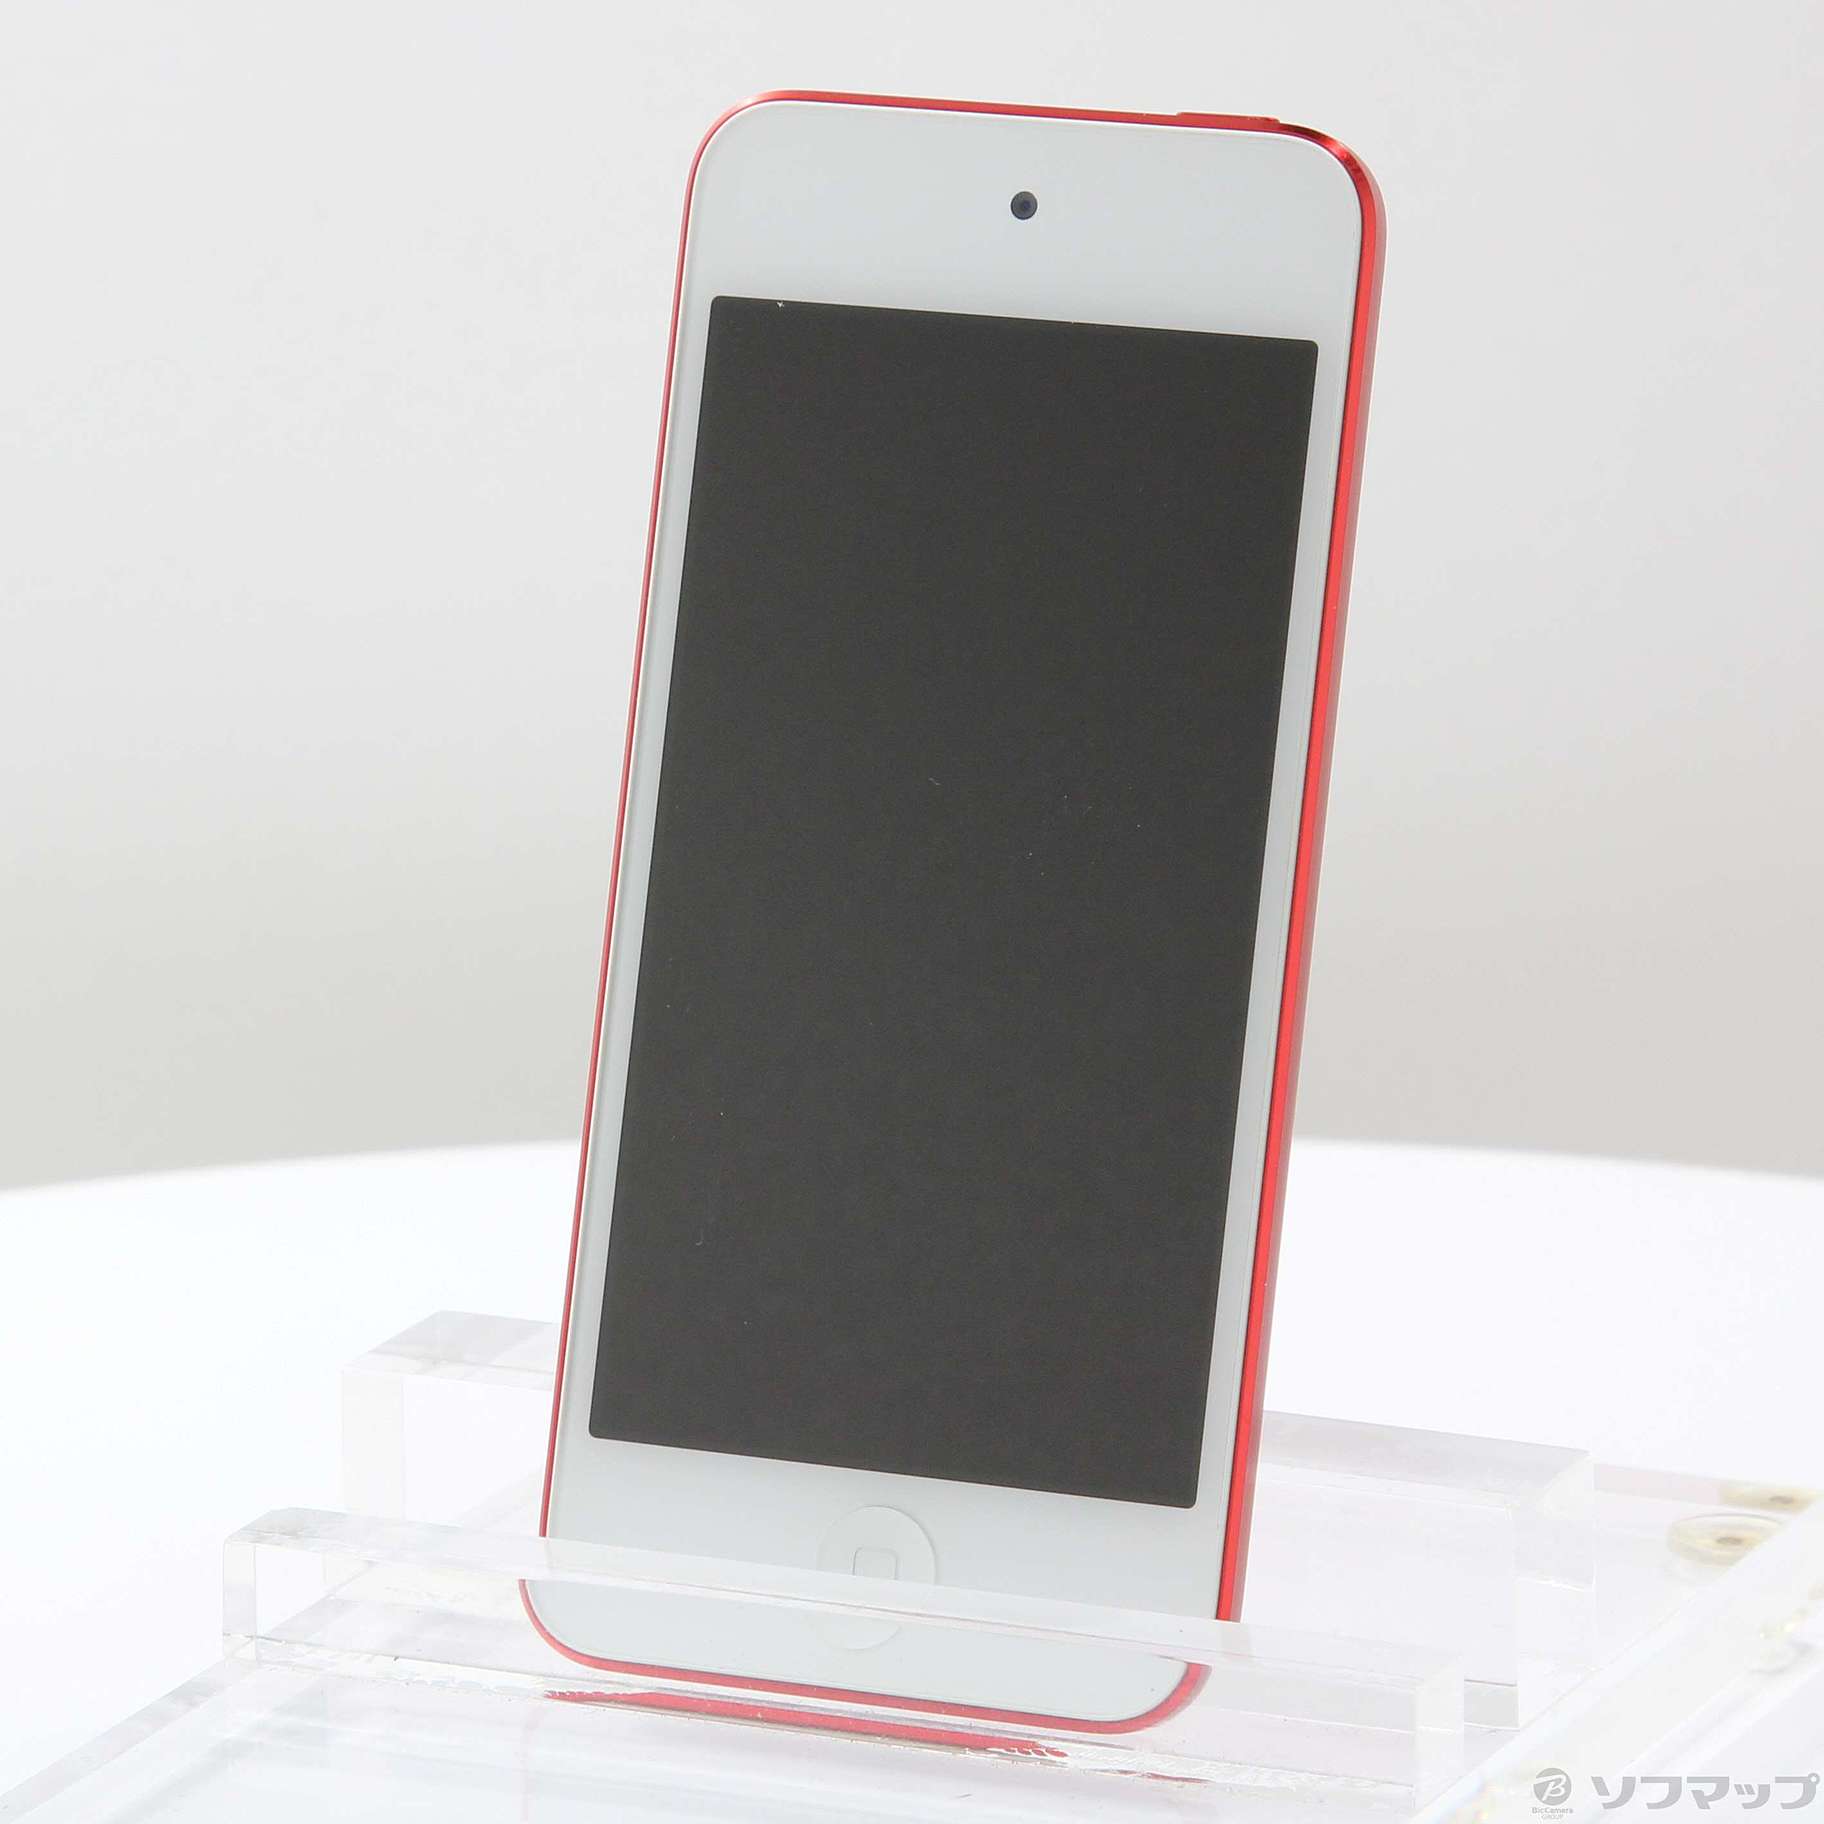 最上の品質な iPod touch第5世代 16GB touch スマートフォン本体